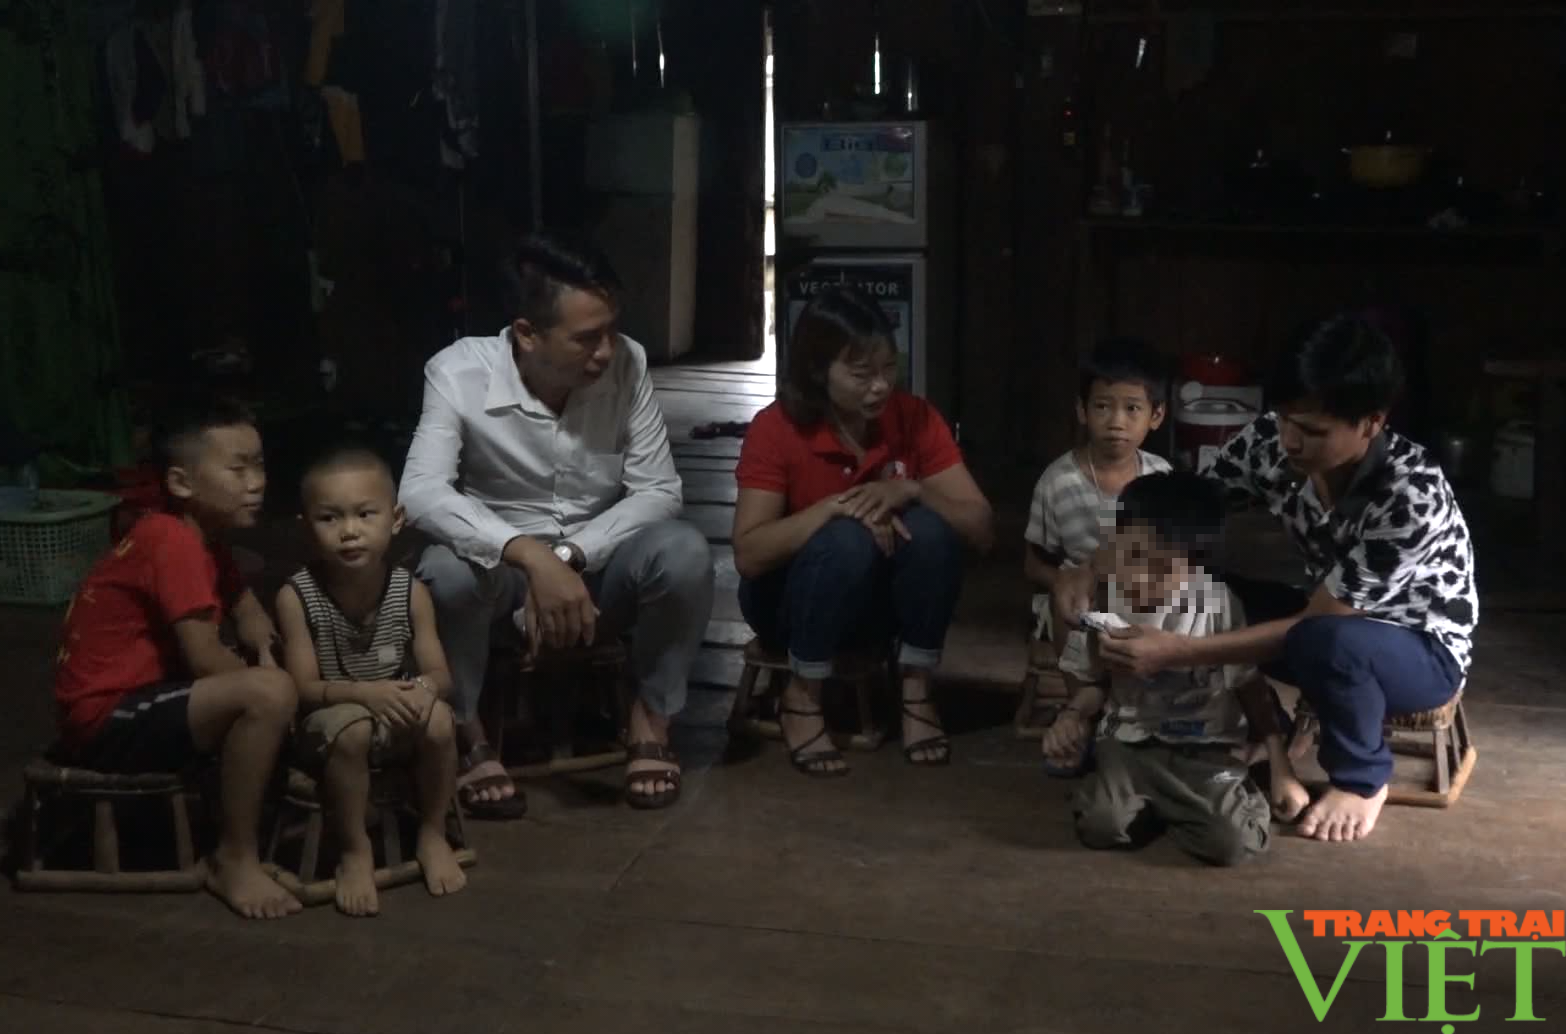 Chính quyền ở nơi này của Lai Châu tối ưu các chính sách, chia sẻ khó khăn với trẻ em khuyết tật - Ảnh 2.